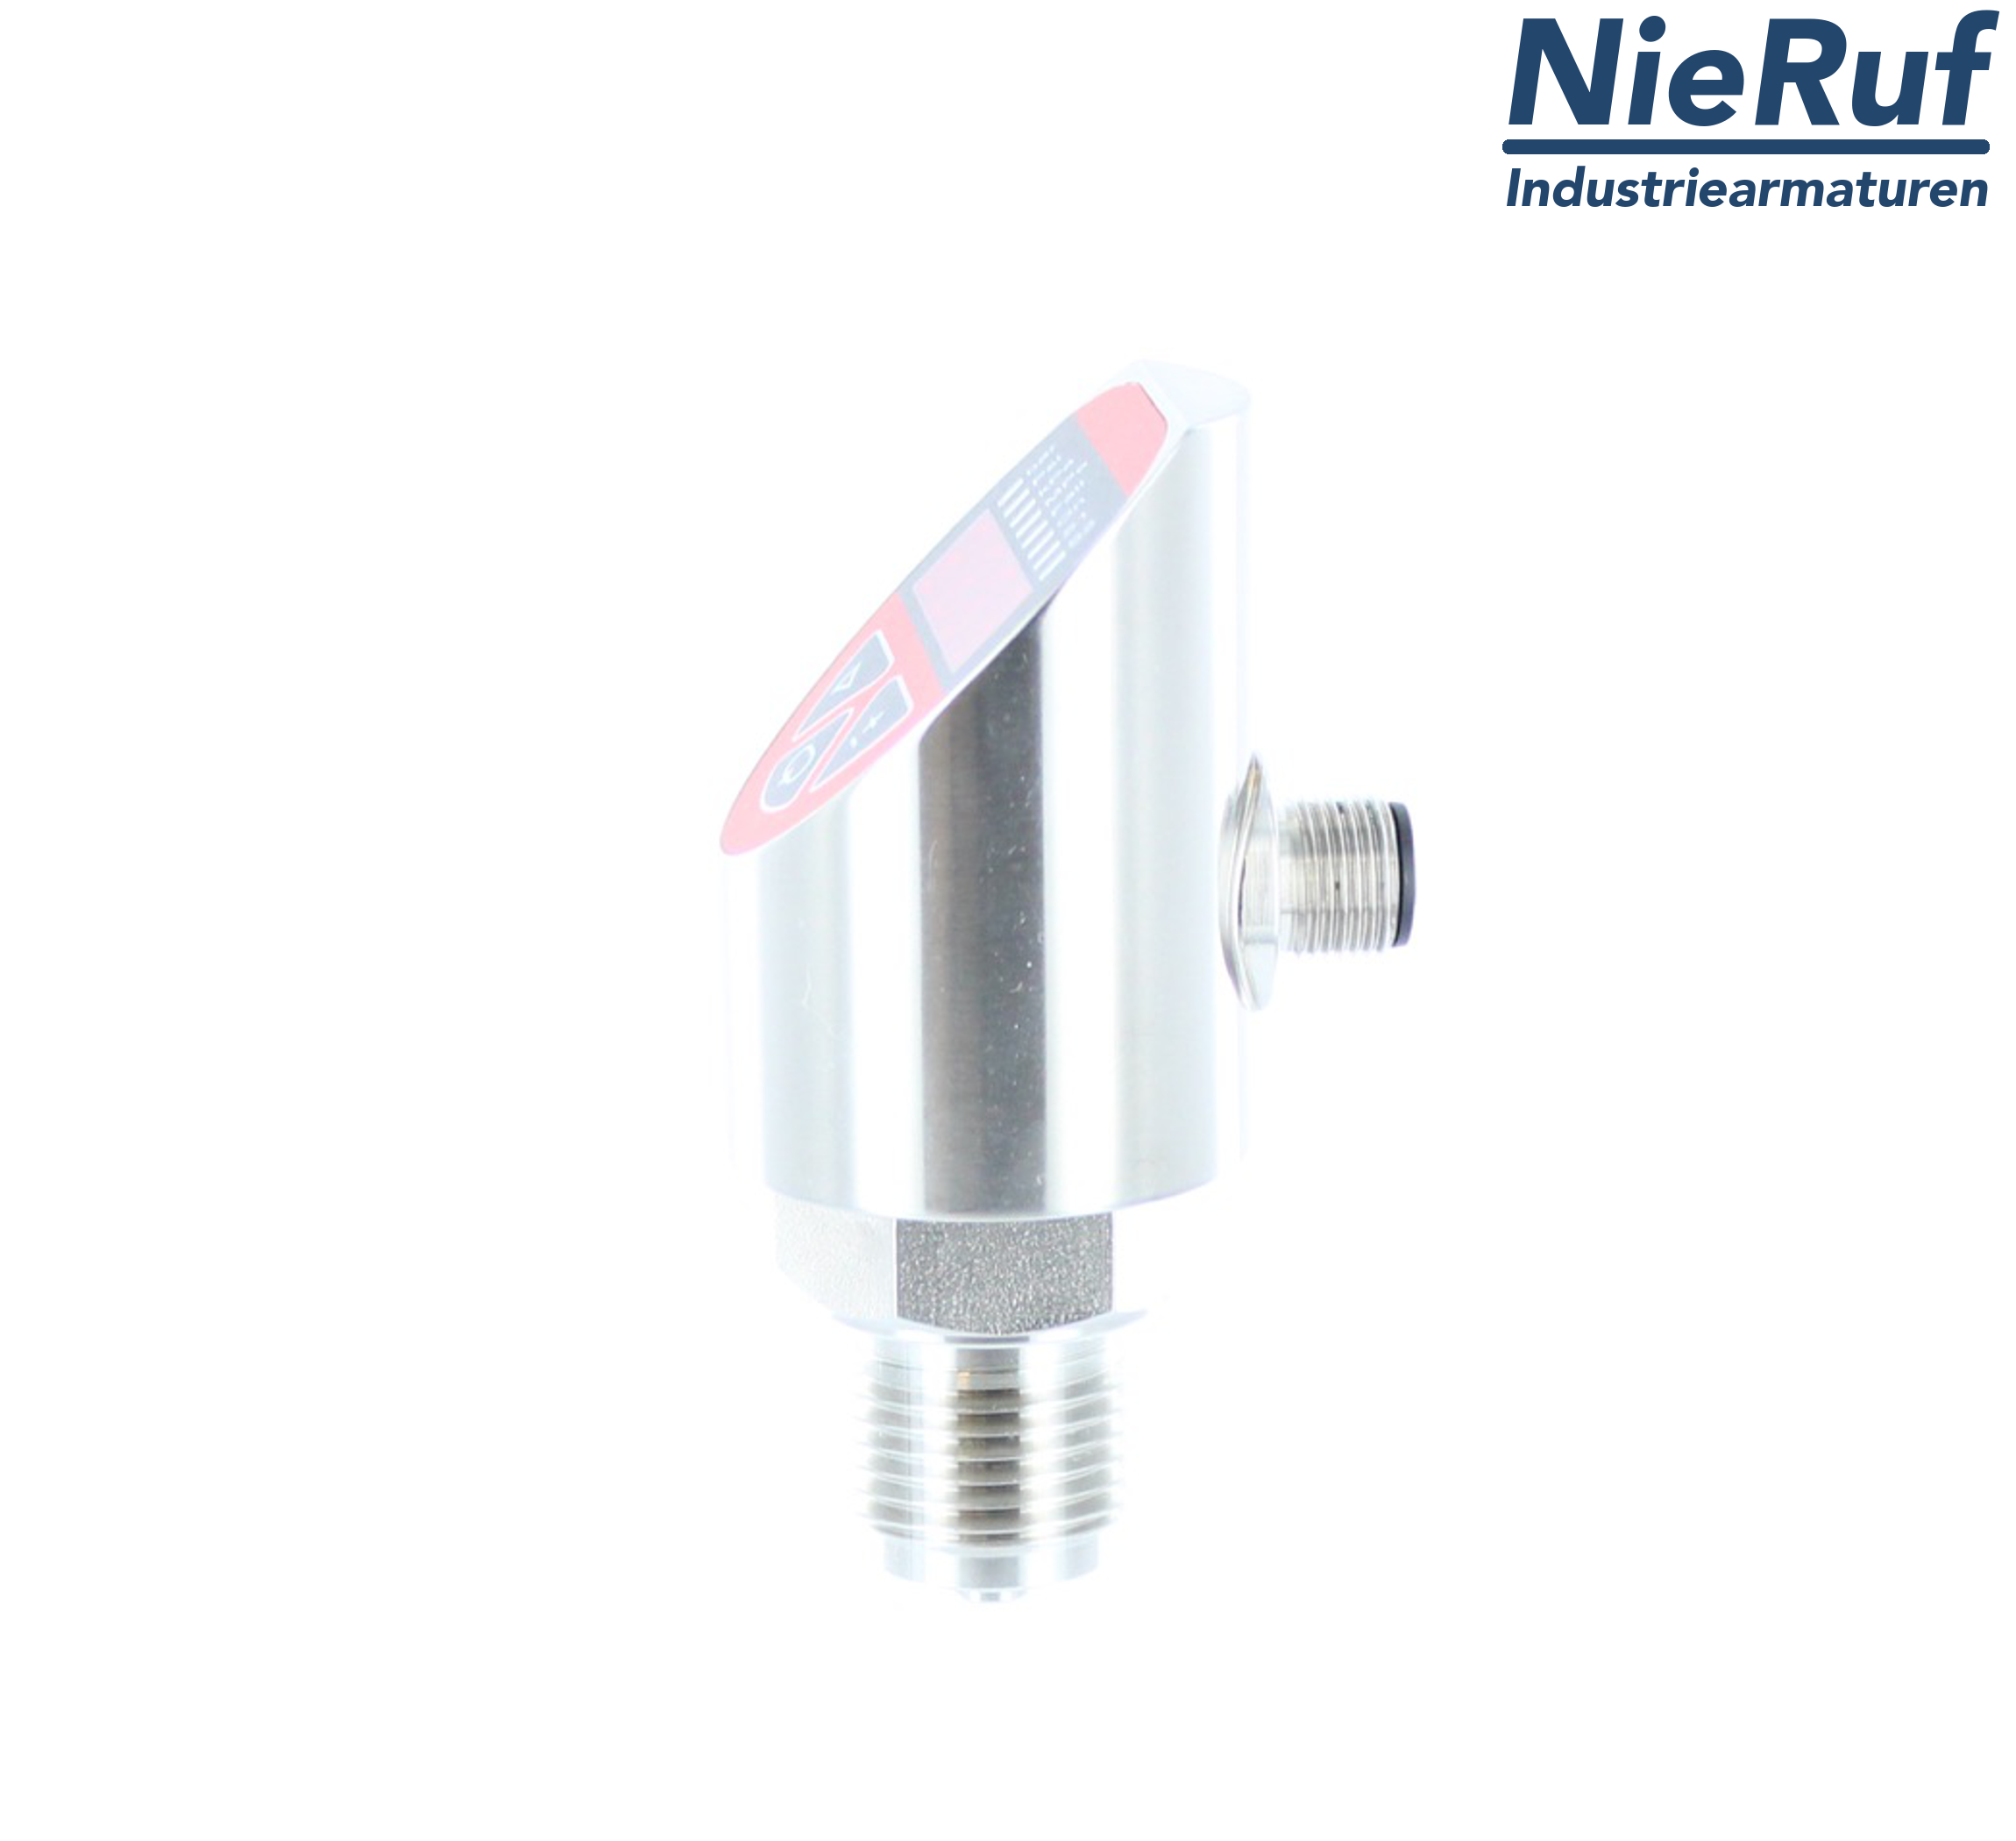 digital pressure sensor G 1/4" B 5-wire: 2xPNP, 1x4 - 20mA FPM 0,0 - 16,0 bar